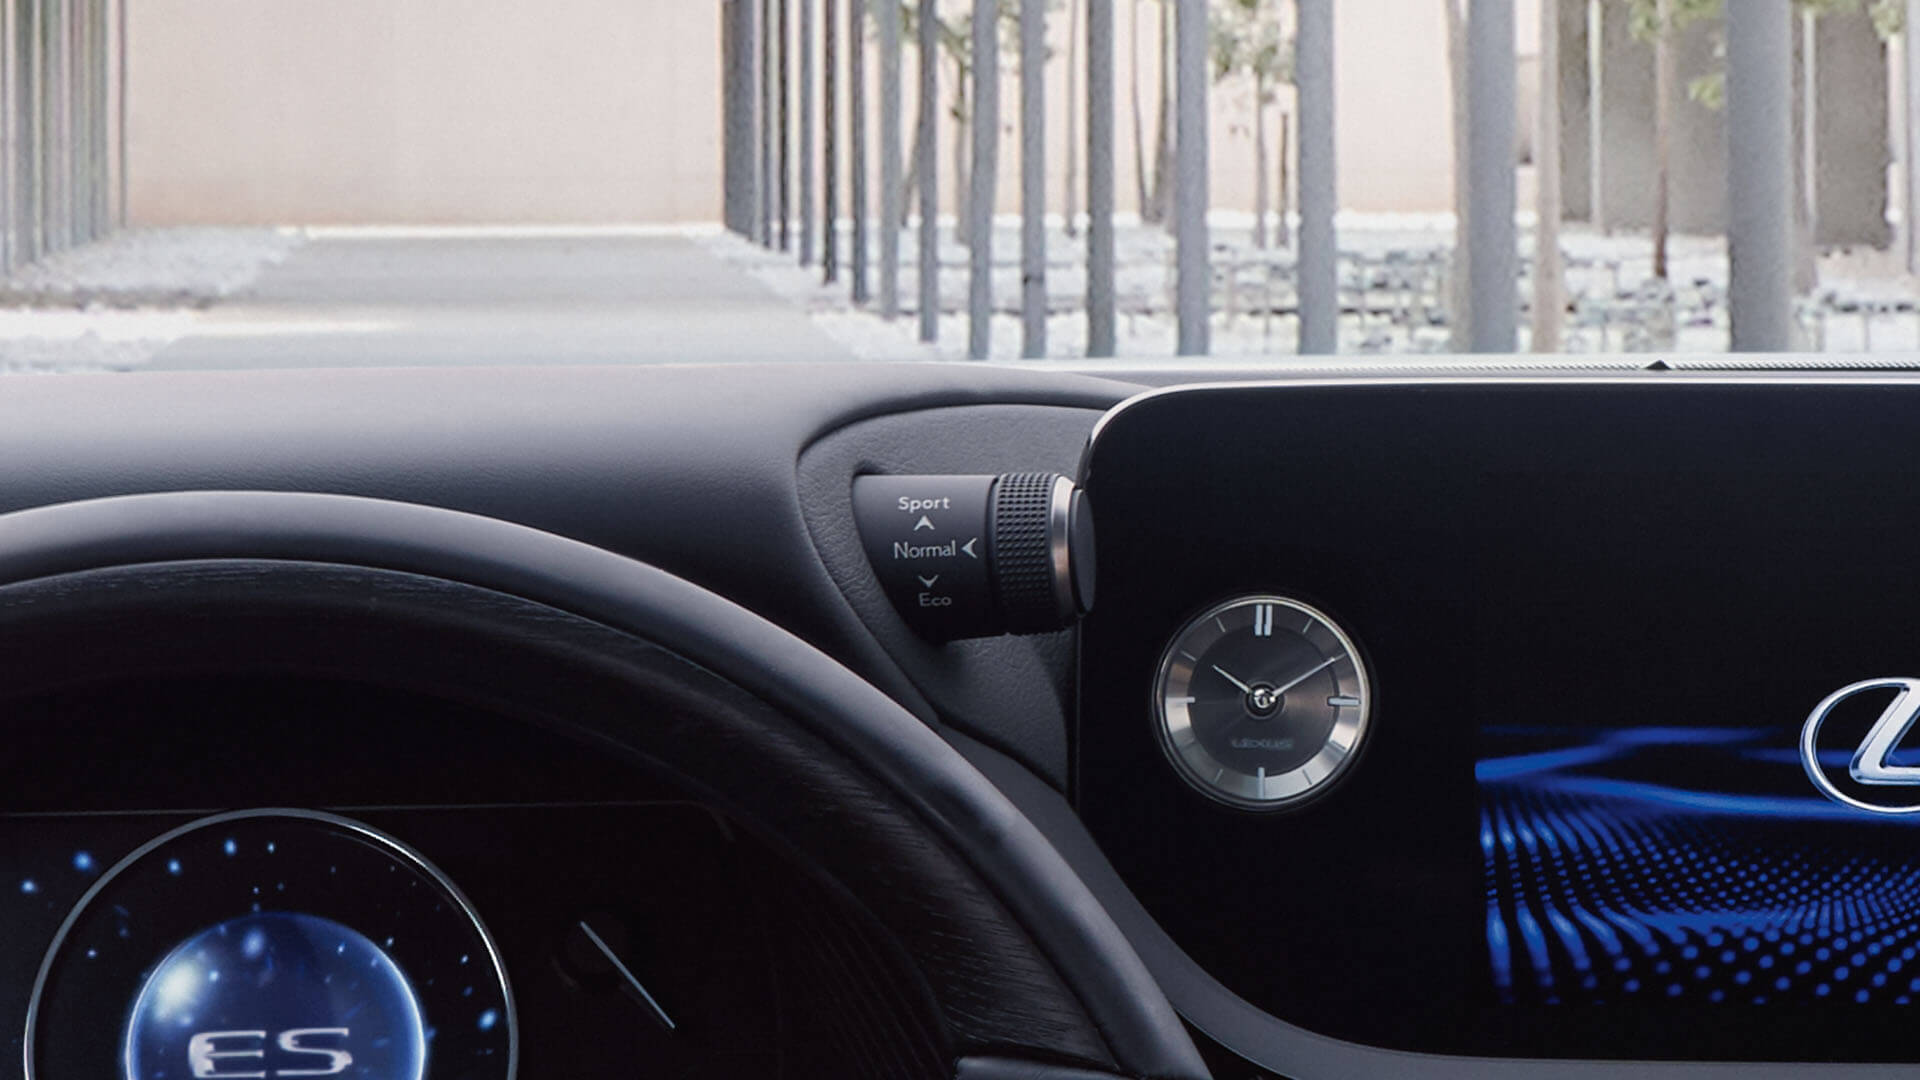 Lexus-interieur-drive-mode